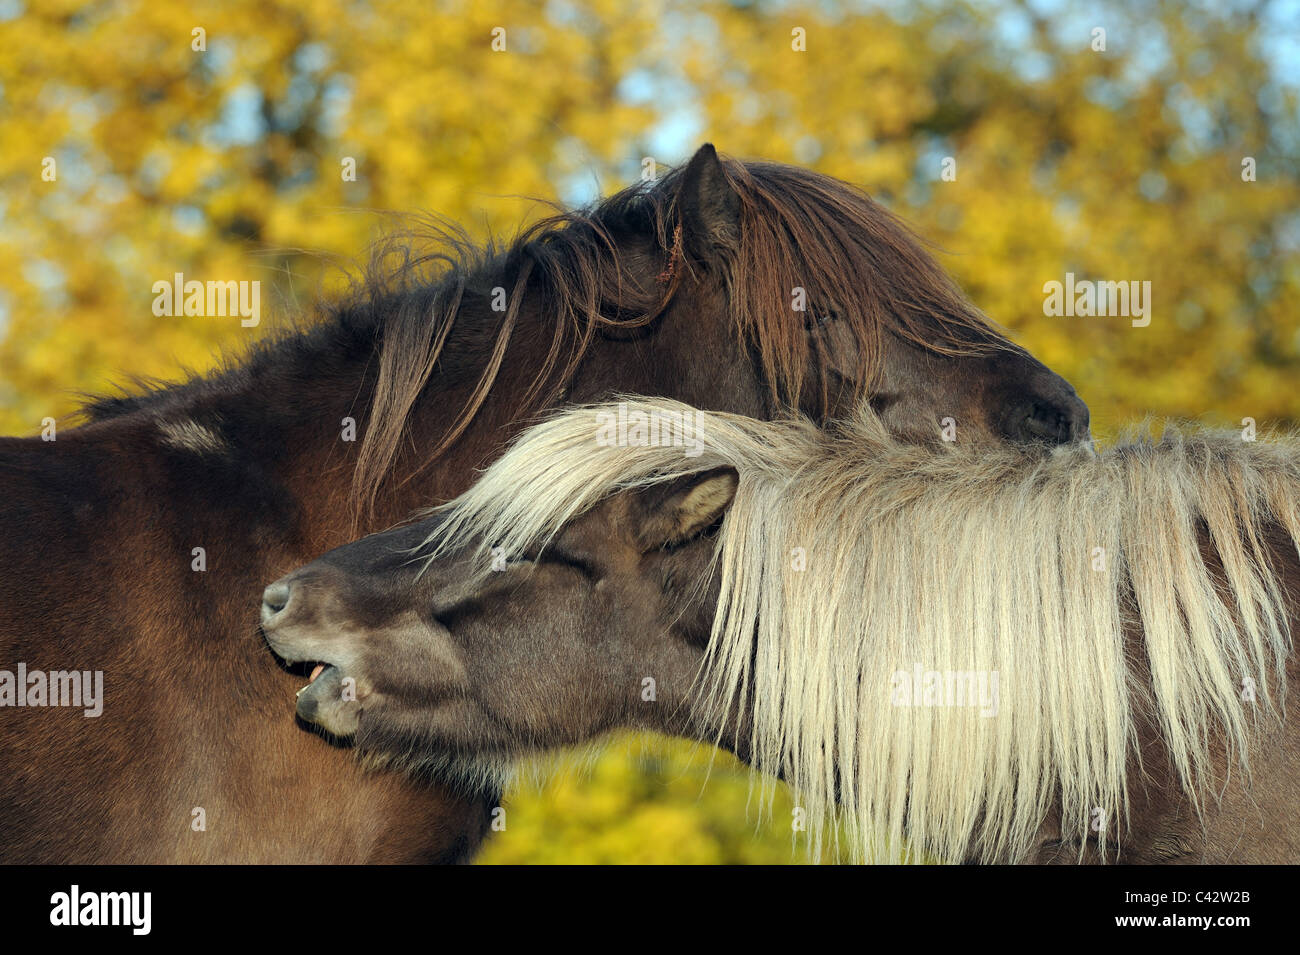 Cheval islandais (Equus ferus caballus). Deux jeunes juments sur un pâturage, toilettage mutuel. L'Allemagne. Banque D'Images